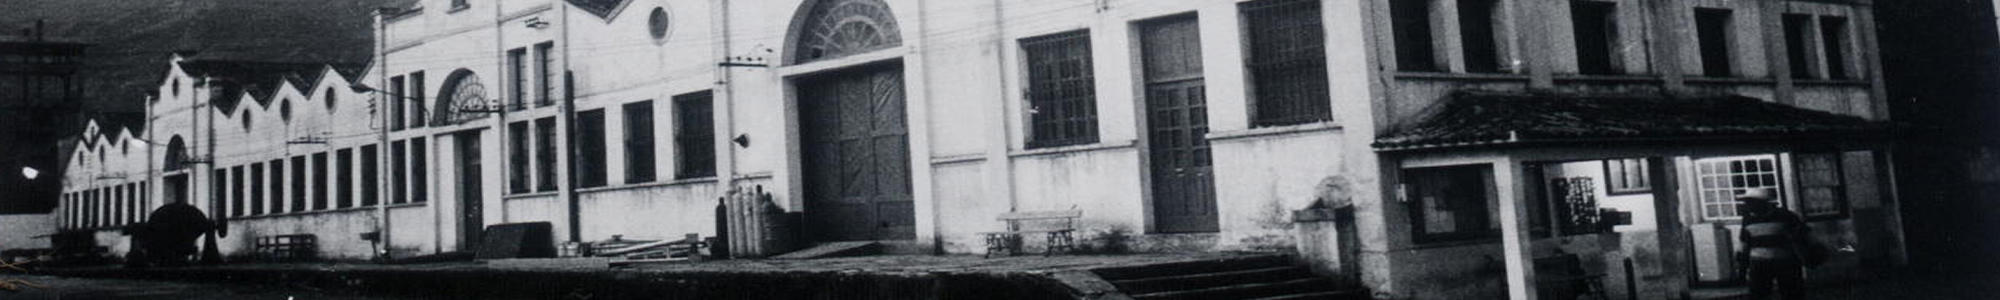 Imagem antiga da fachada do centro de artes e convenções da UFOP